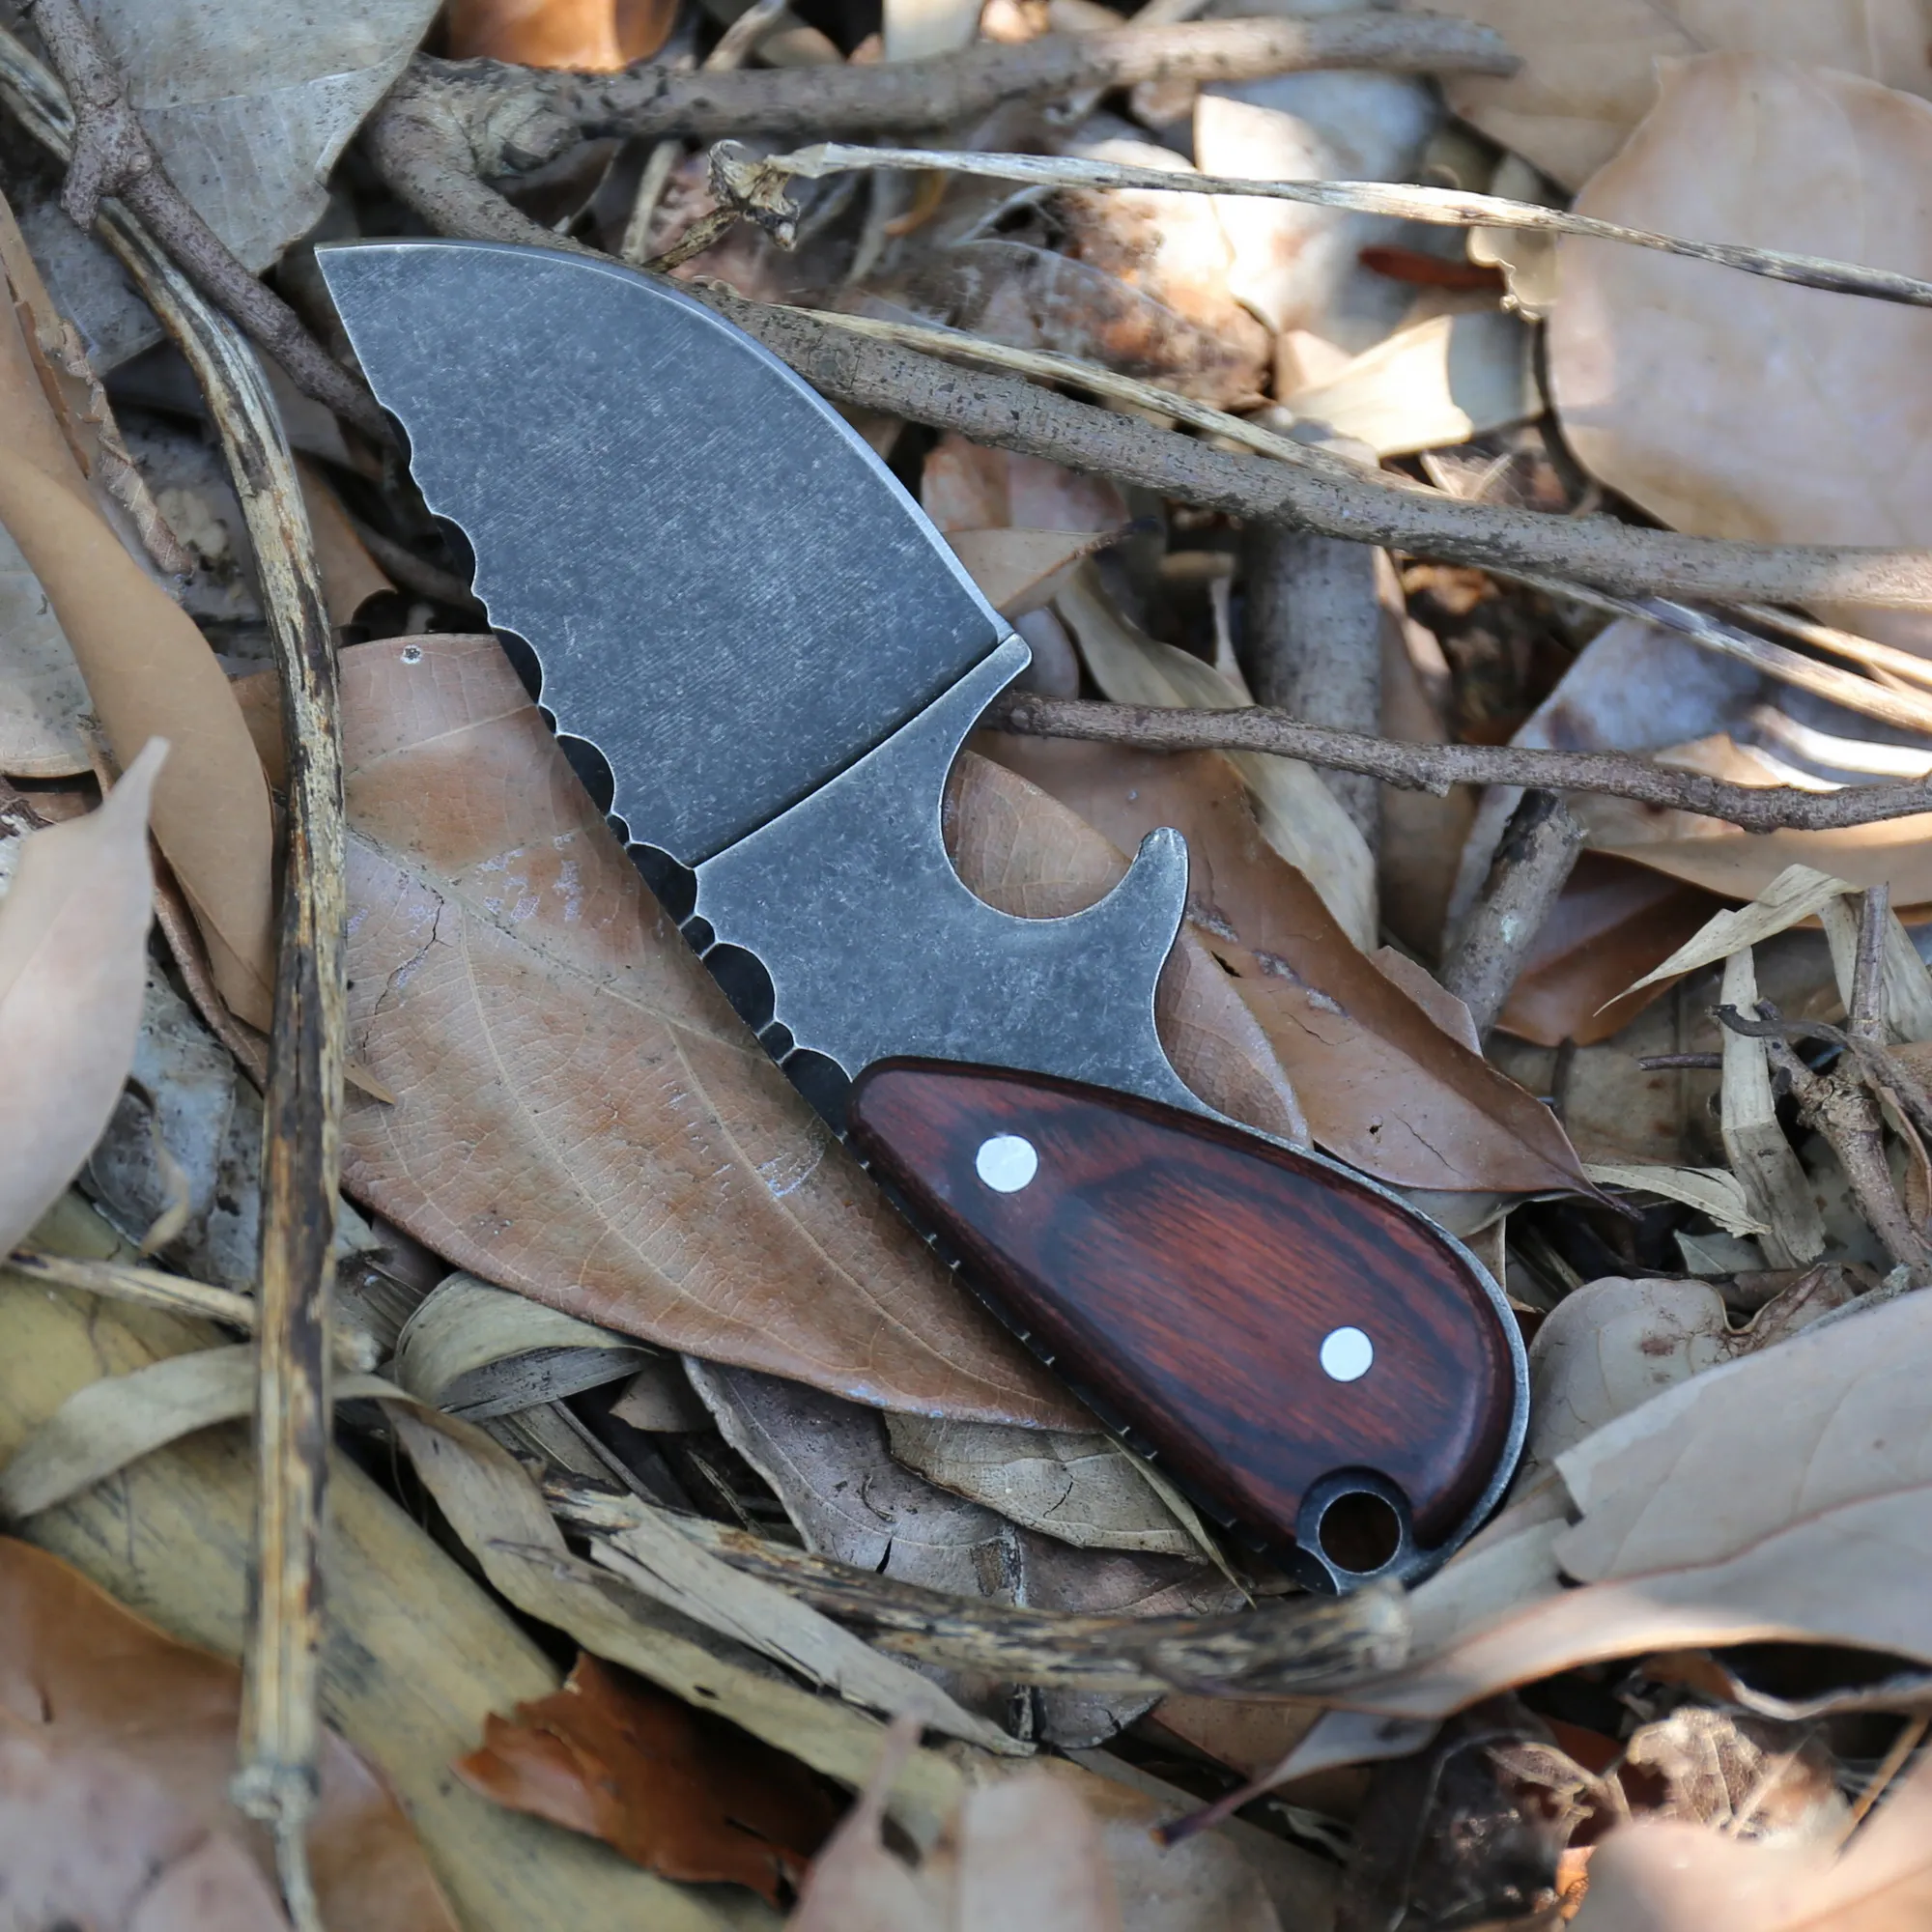 بديعة مستقيم سكين مقبض الخشب حجر غسل شفرة outdoors والعتاد التخييم بقاء سكاكين الصيد التكتيكي سكين هدية أدوات التدريب